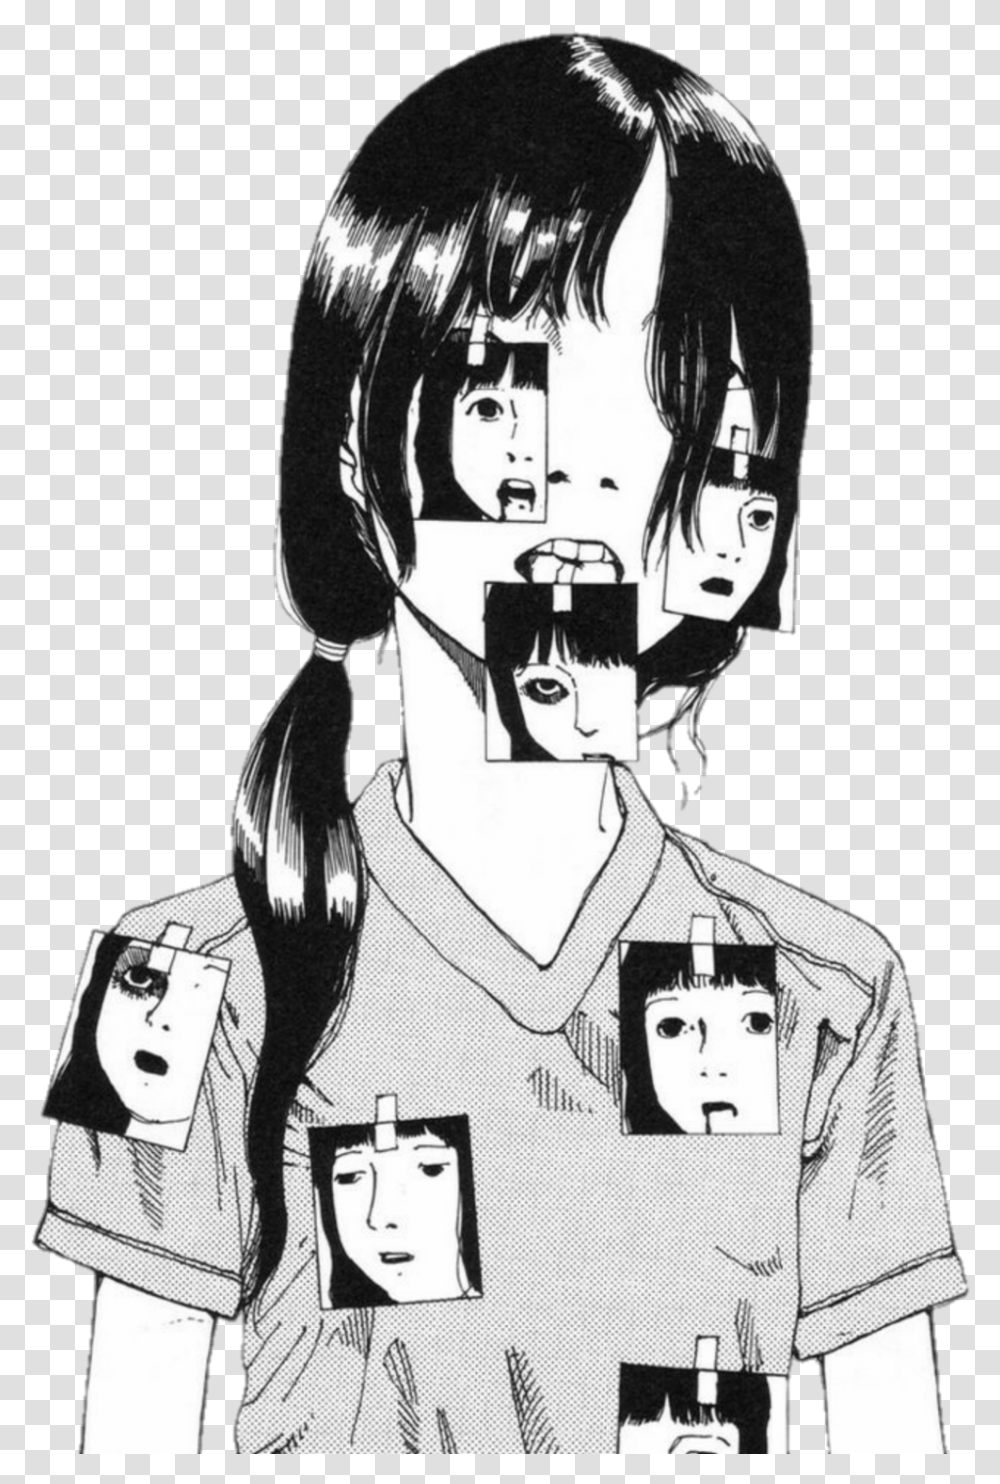 Girl Creepy Anime Shintaro Kago, Comics, Book, Manga, Person Transparent Png